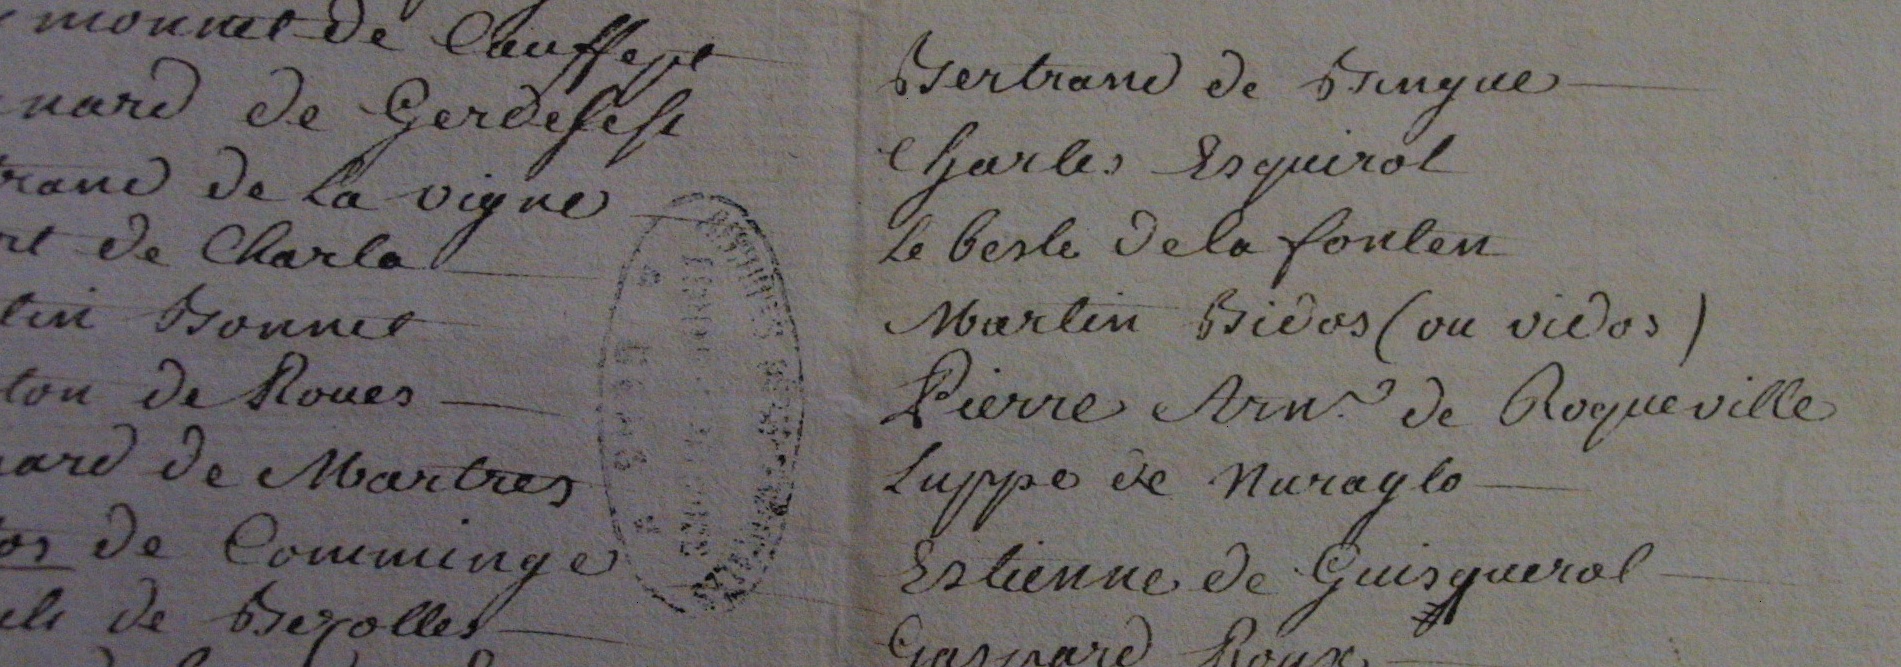 première copie de la montre conservée aux archives départementales du Gers à Auch